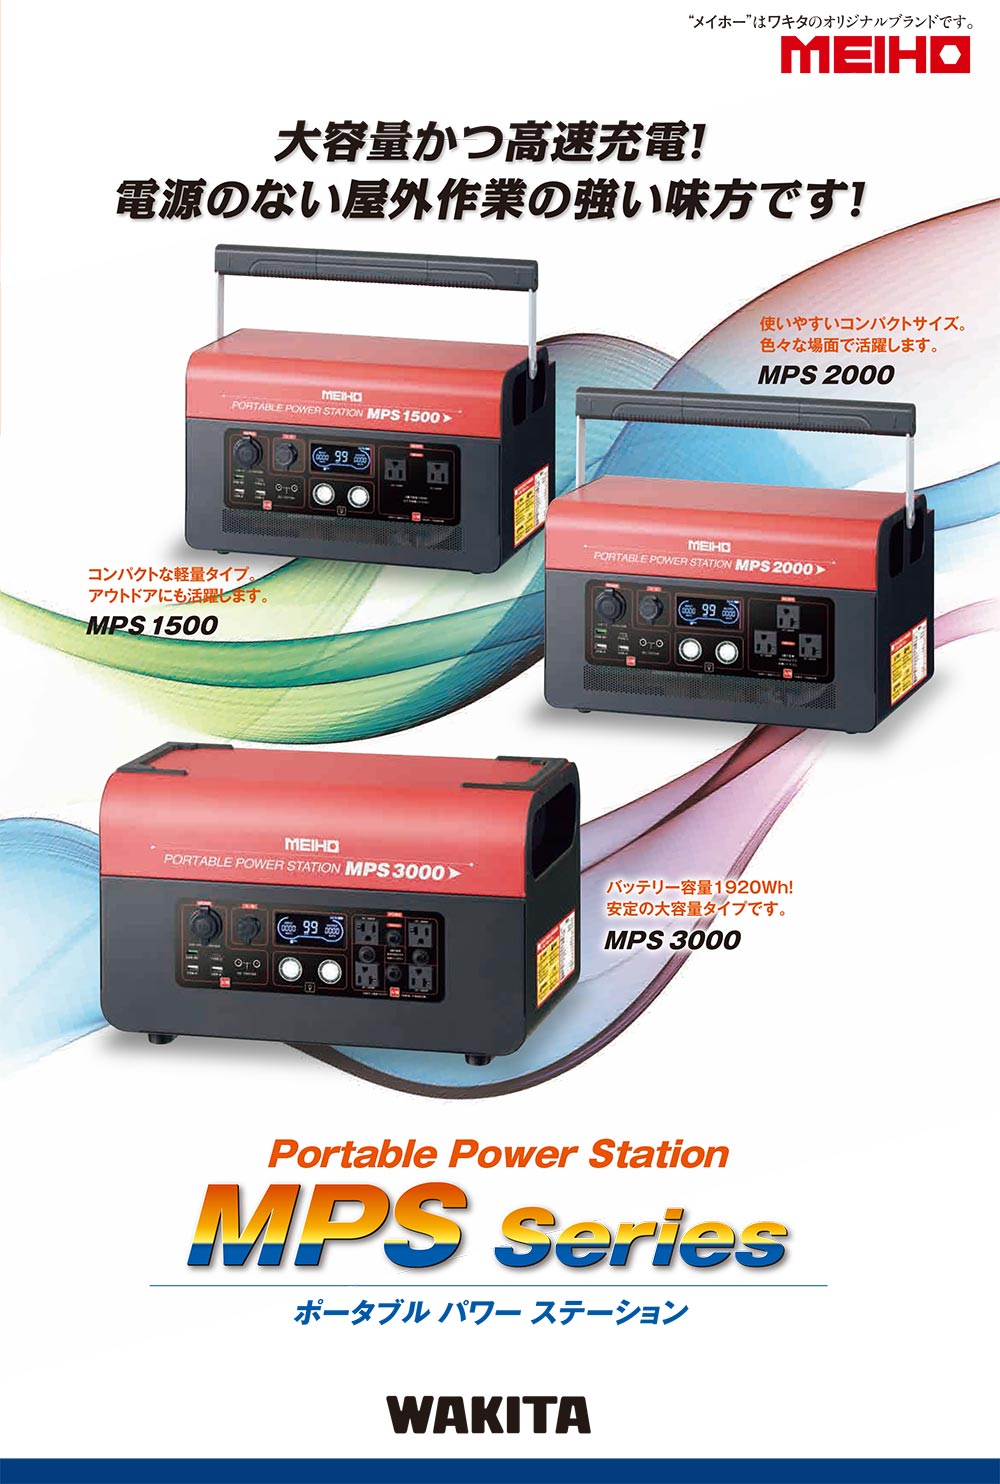 【2021新作】 MEIHO ポータブル電源 ポータブルパワーステーション MPS2000 (1536Wh 2000W)